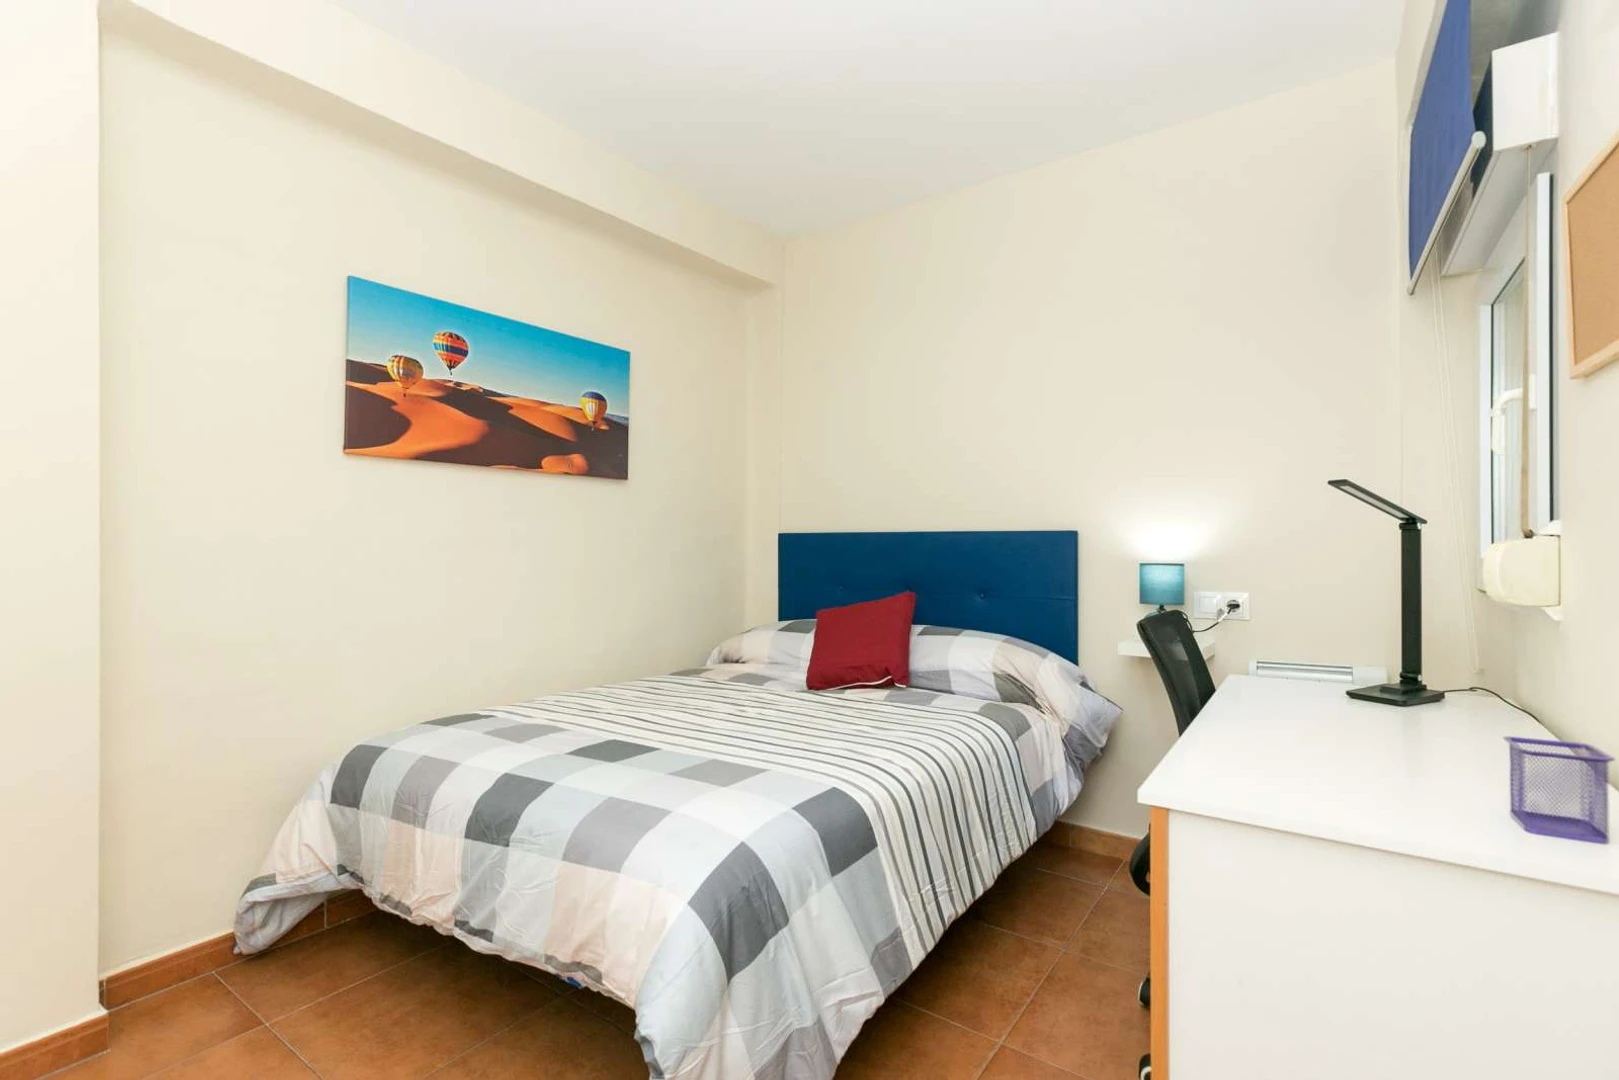 Pokój do wynajęcia z podwójnym łóżkiem w Granada